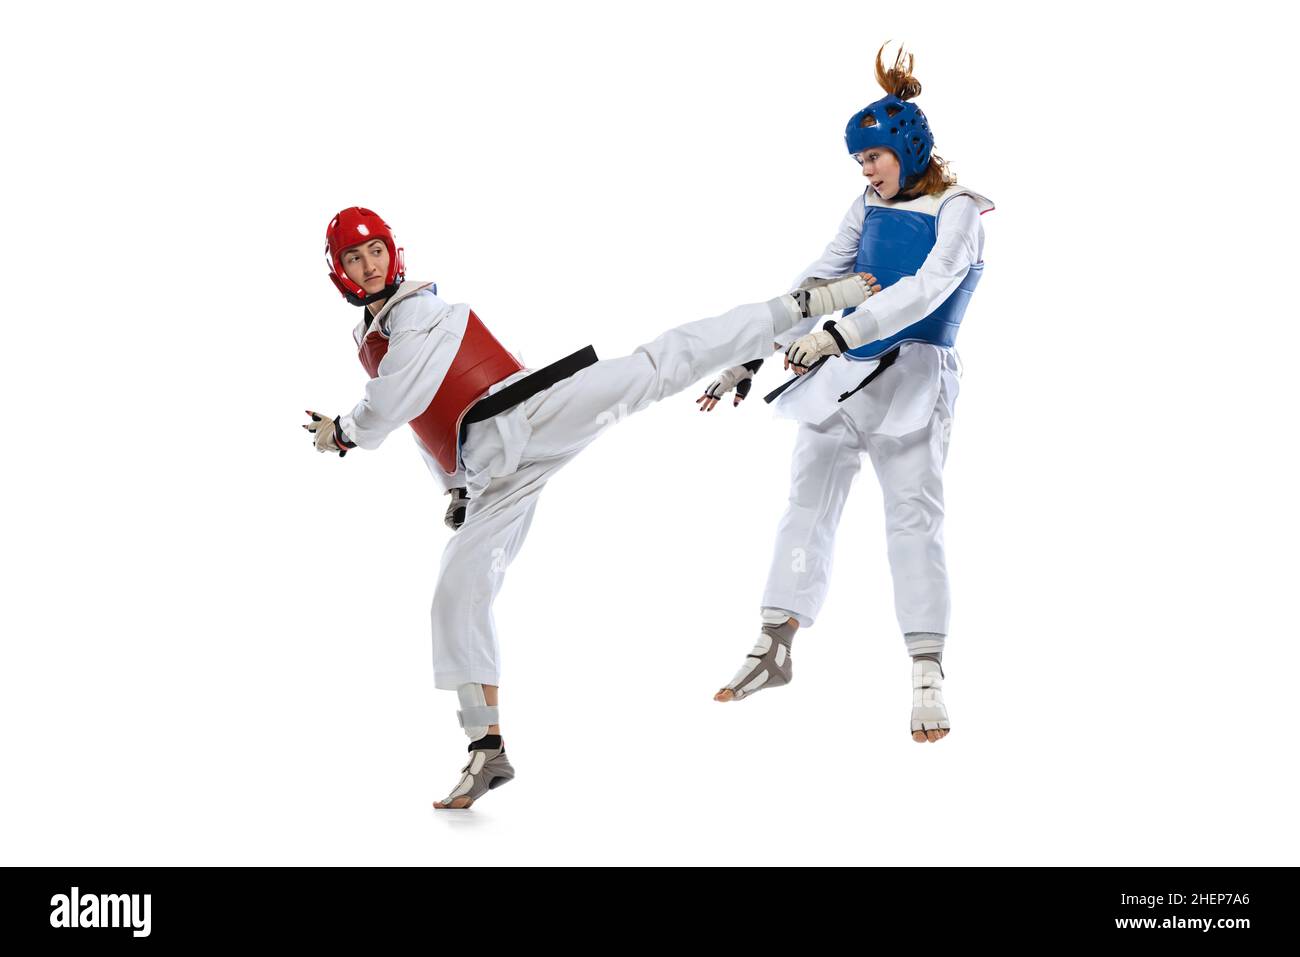 Dynamisches Porträt von zwei jungen Frauen, Taekwondo-Praktizierenden, die isoliert auf weißem Hintergrund zusammen trainieren. Konzept des Sports, Fähigkeiten Stockfoto